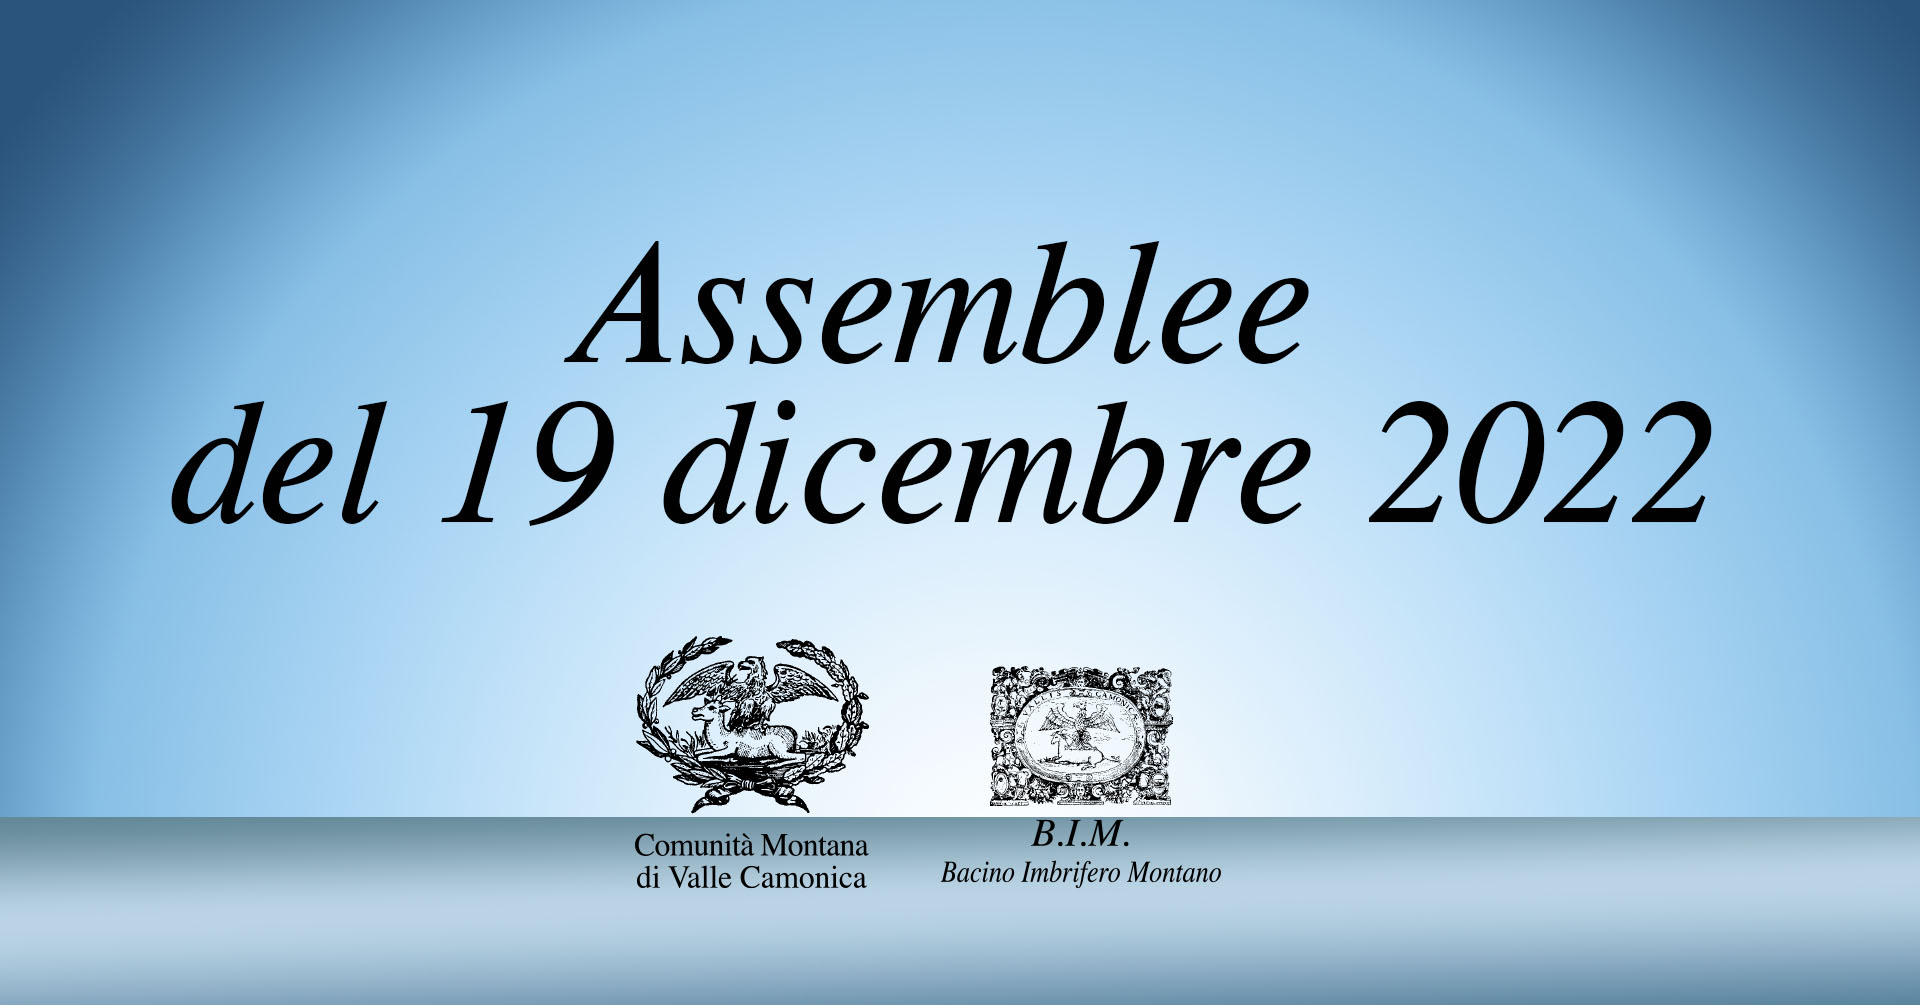 Assemblee di lunedì 19 dicembre 2022